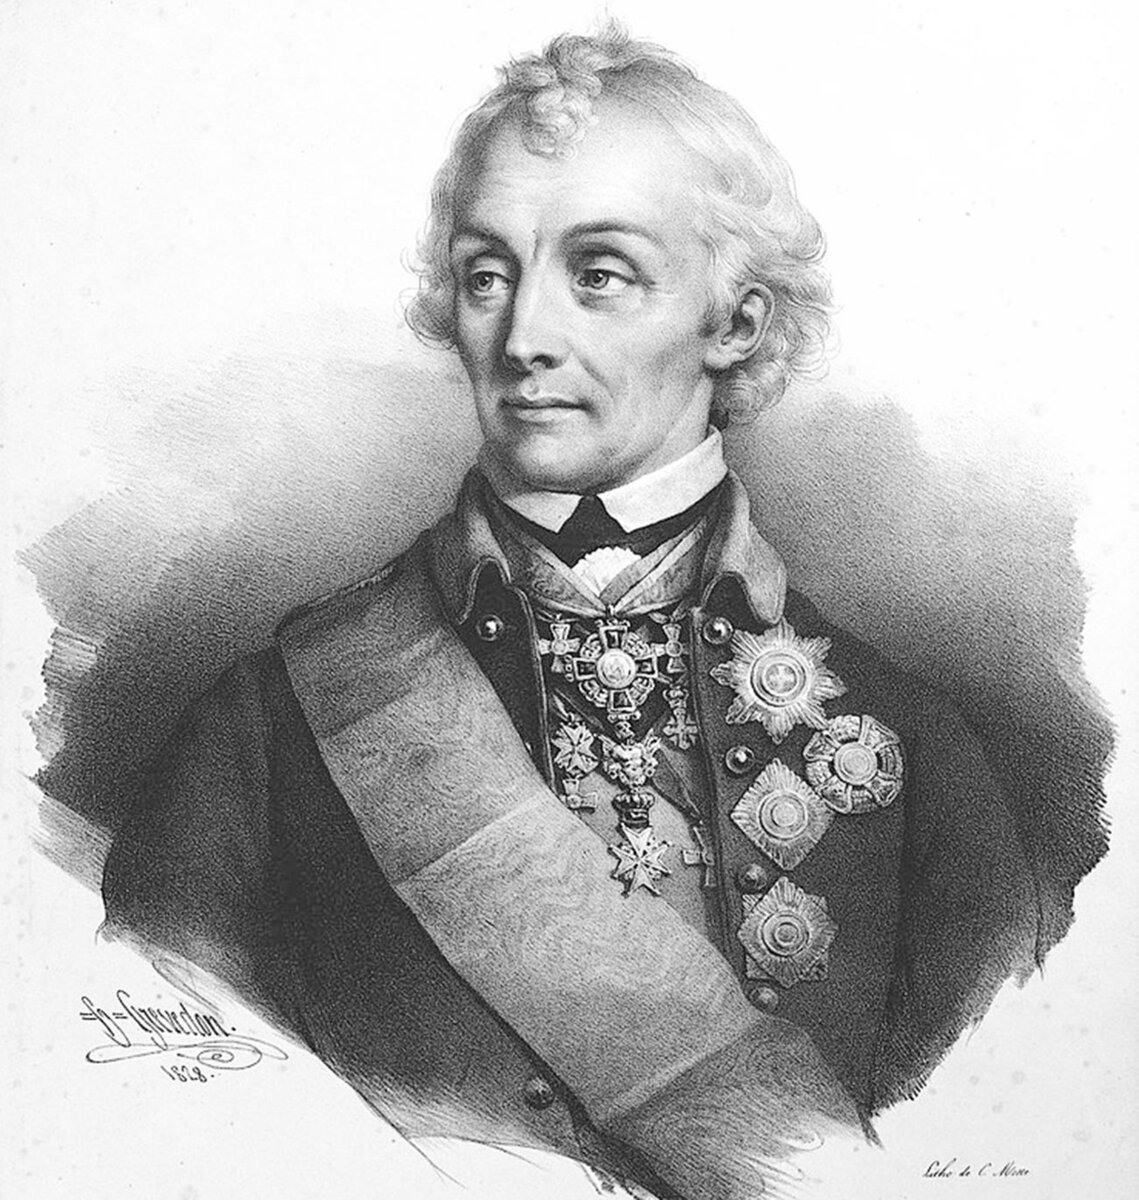 Полководец Суворов Александр Васильевич. Литография 1828 г. Общественное достояние